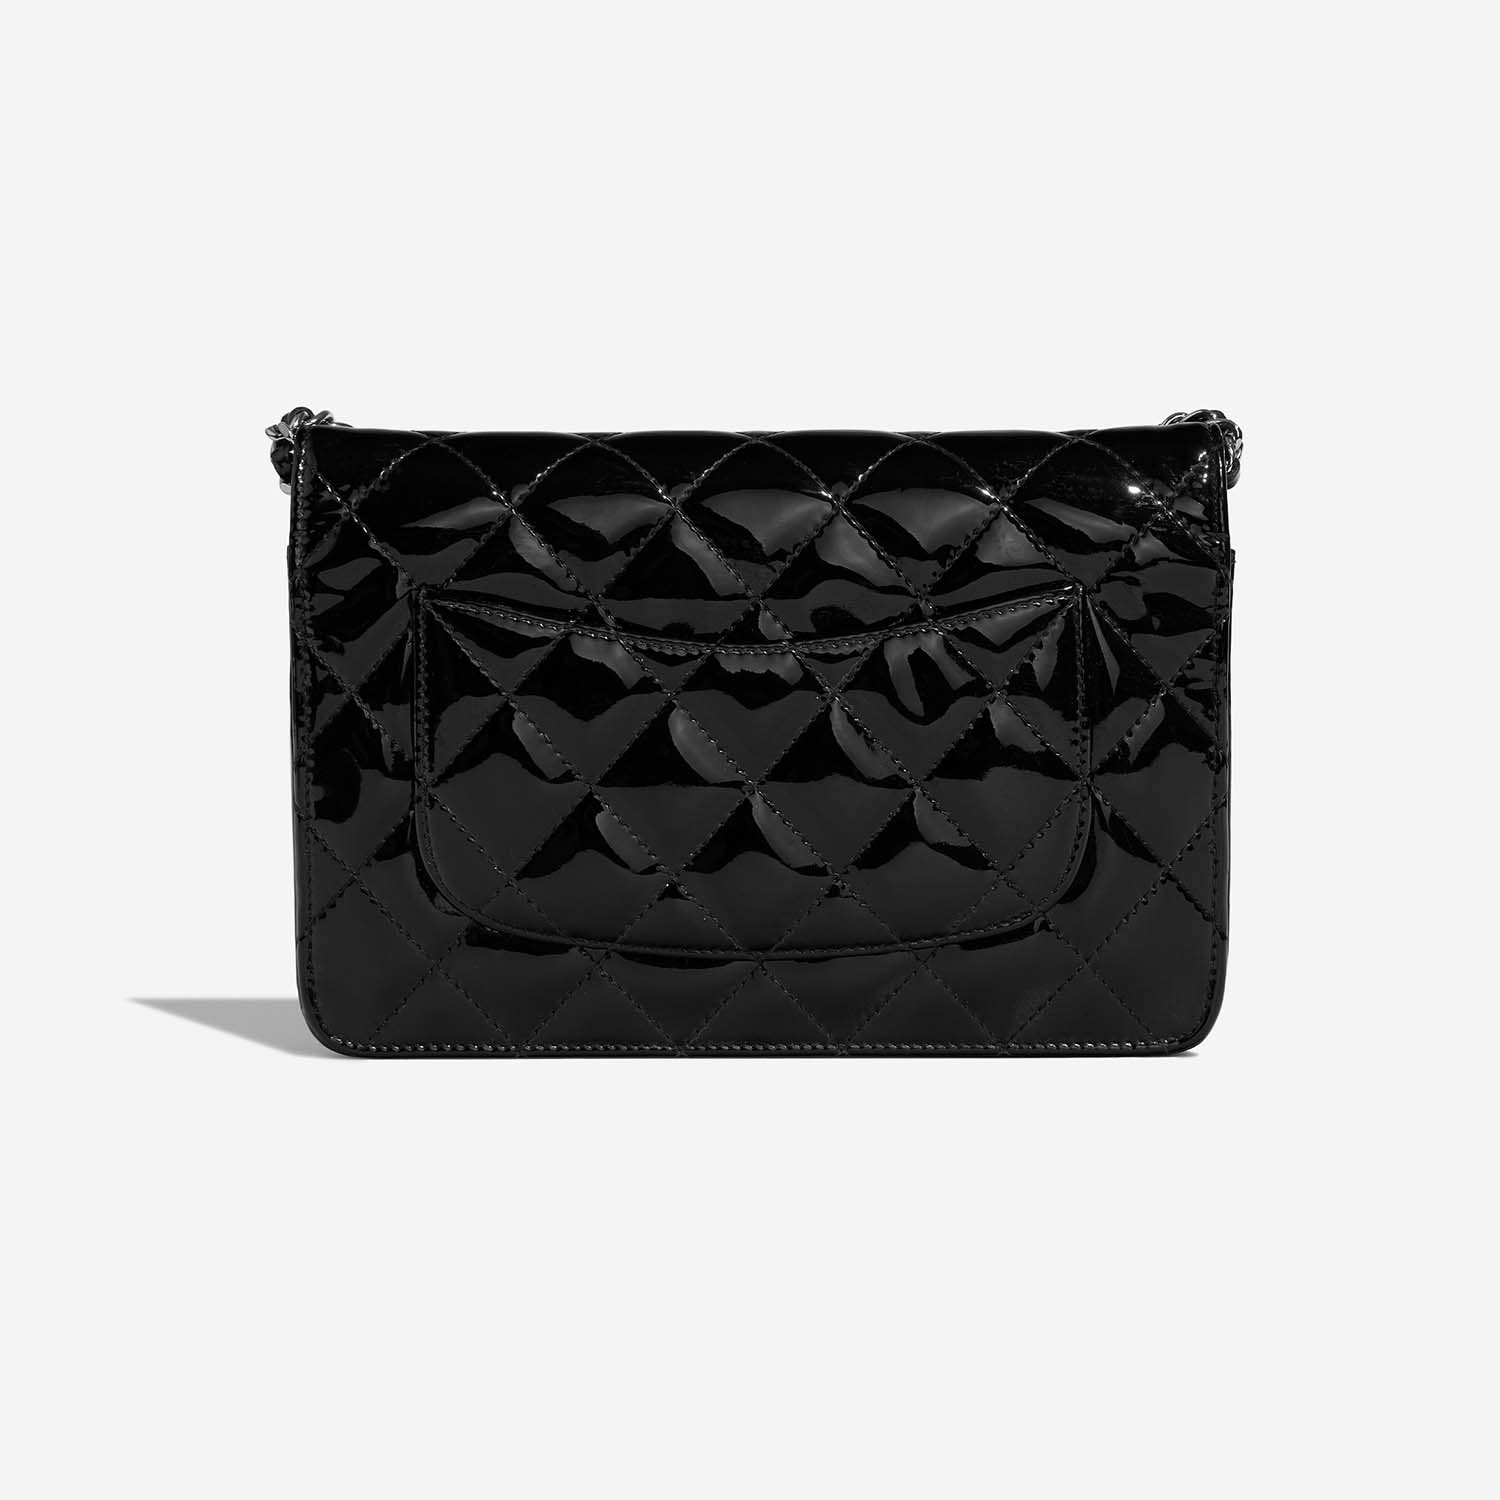 Chanel WOC Black Back | Verkaufen Sie Ihre Designer-Tasche auf Saclab.com